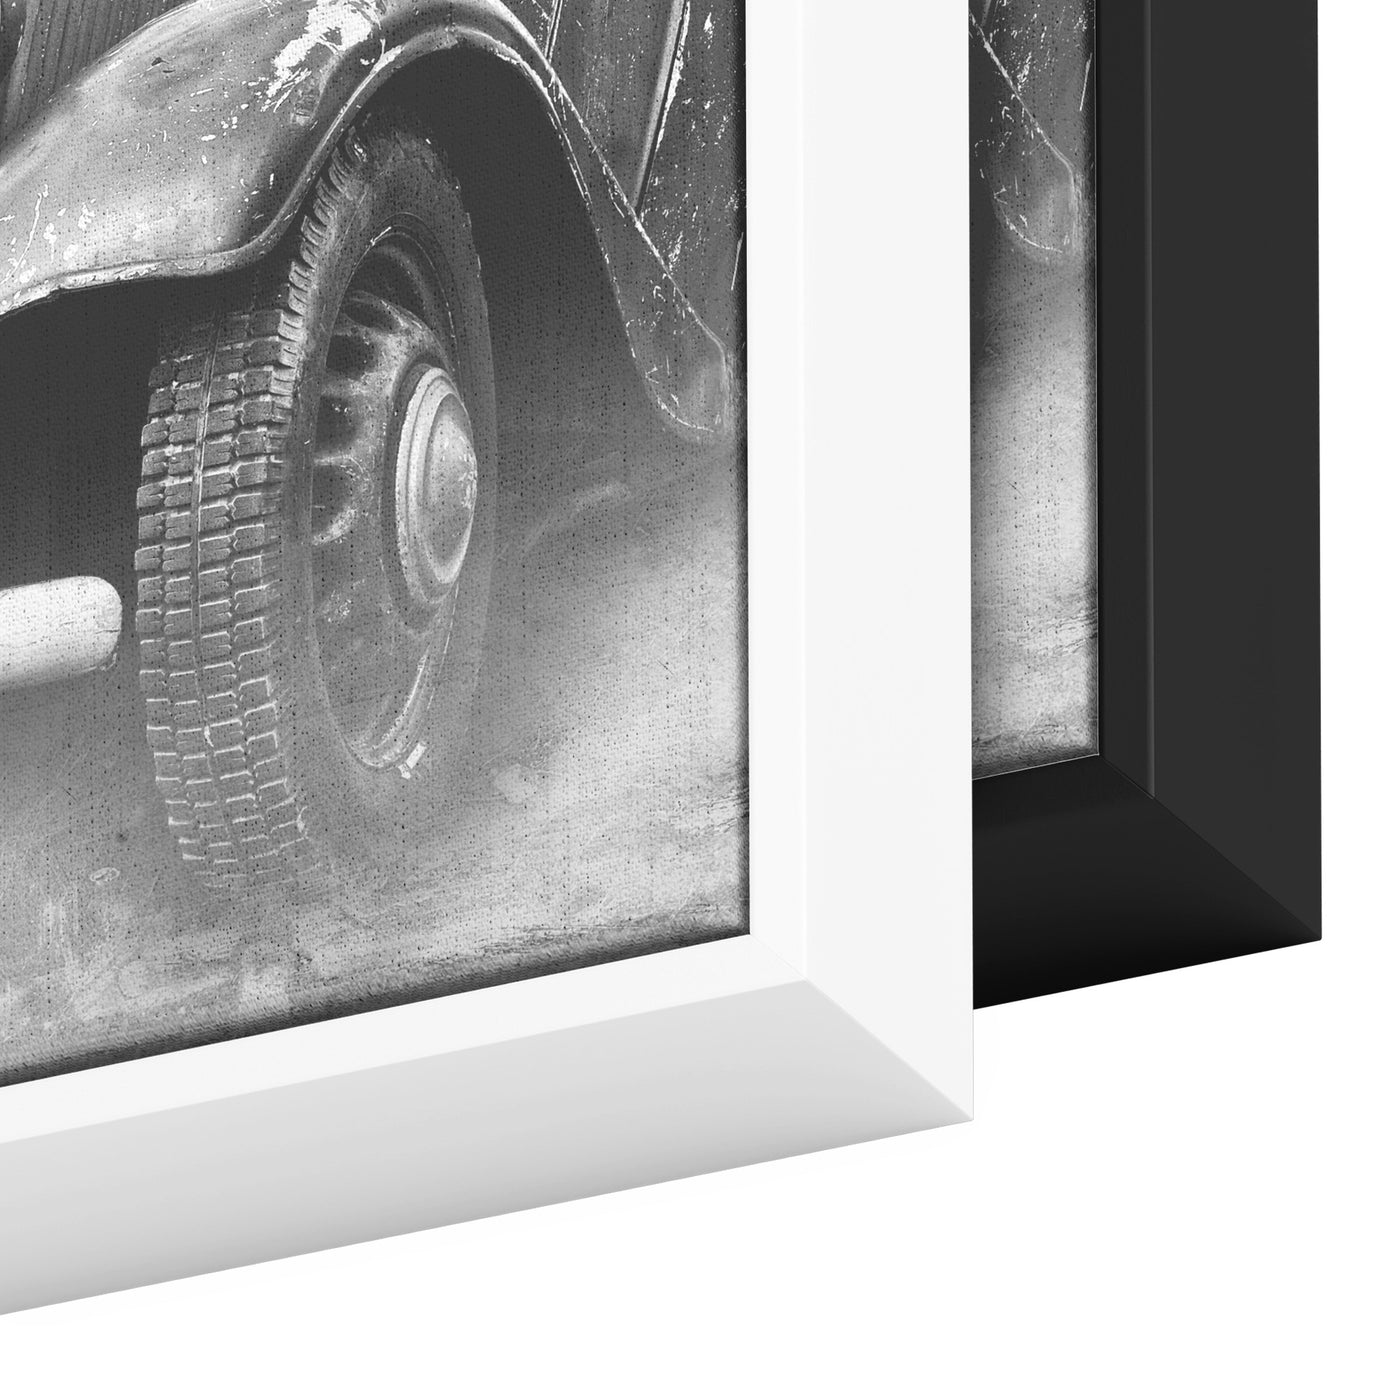 Vintage Automobile | Framed Canvas Print